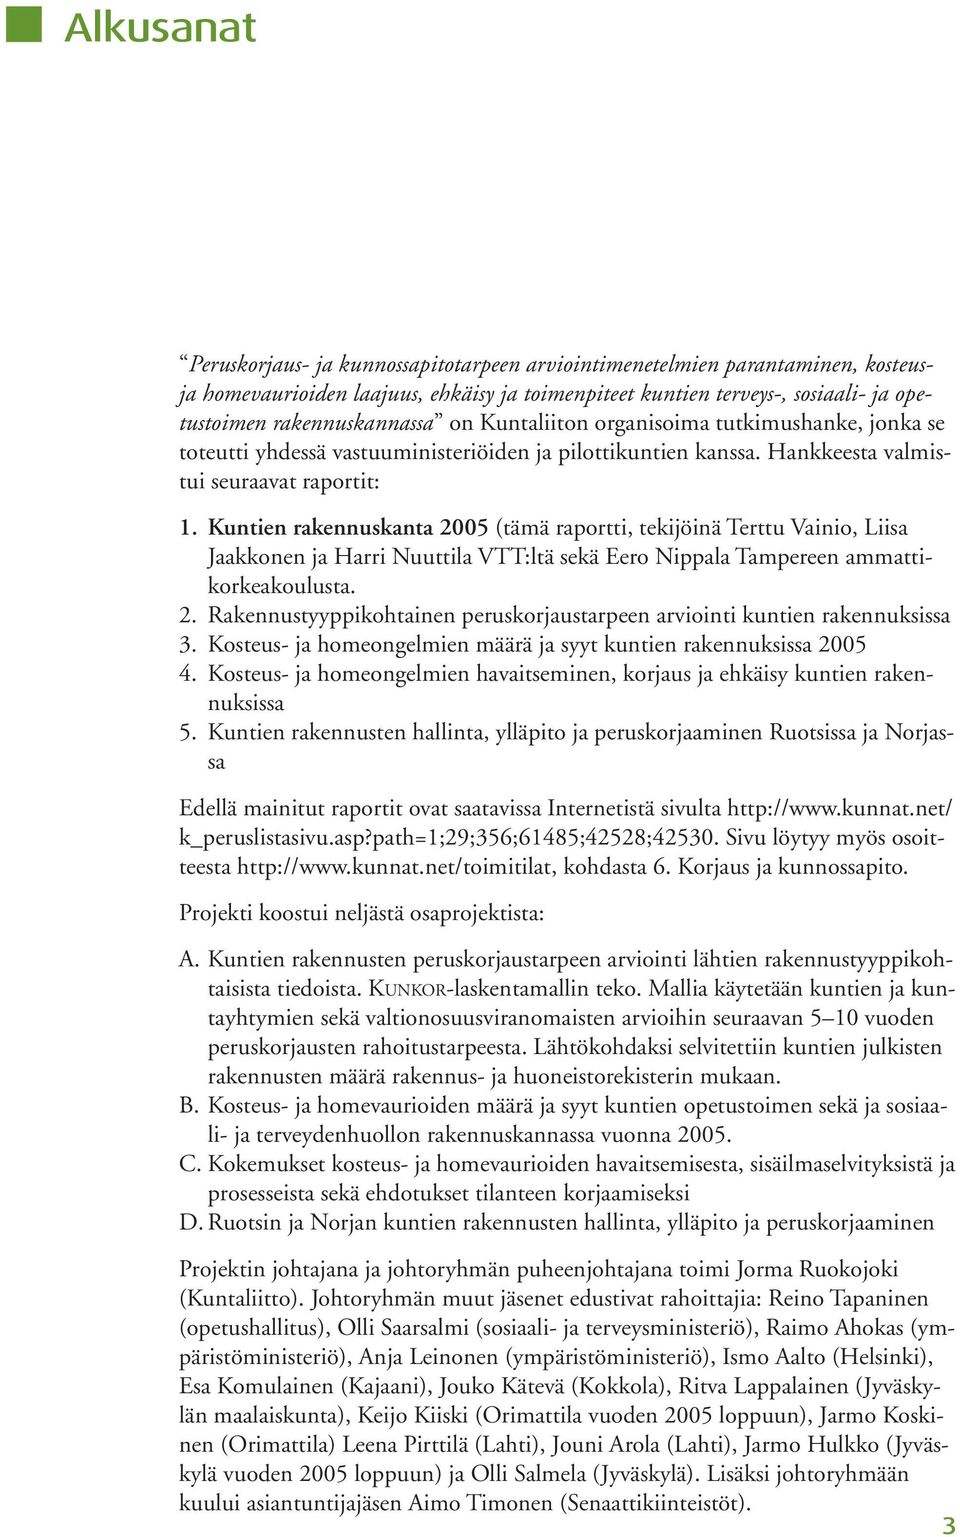 Kuntien rakennuskanta 2005 (tämä raportti, tekijöinä Terttu Vainio, Liisa Jaakkonen ja Harri Nuuttila VTT:ltä sekä Eero Nippala Tampereen ammattikorkeakoulusta. 2. Rakennustyyppikohtainen peruskorjaustarpeen arviointi kuntien rakennuksissa 3.